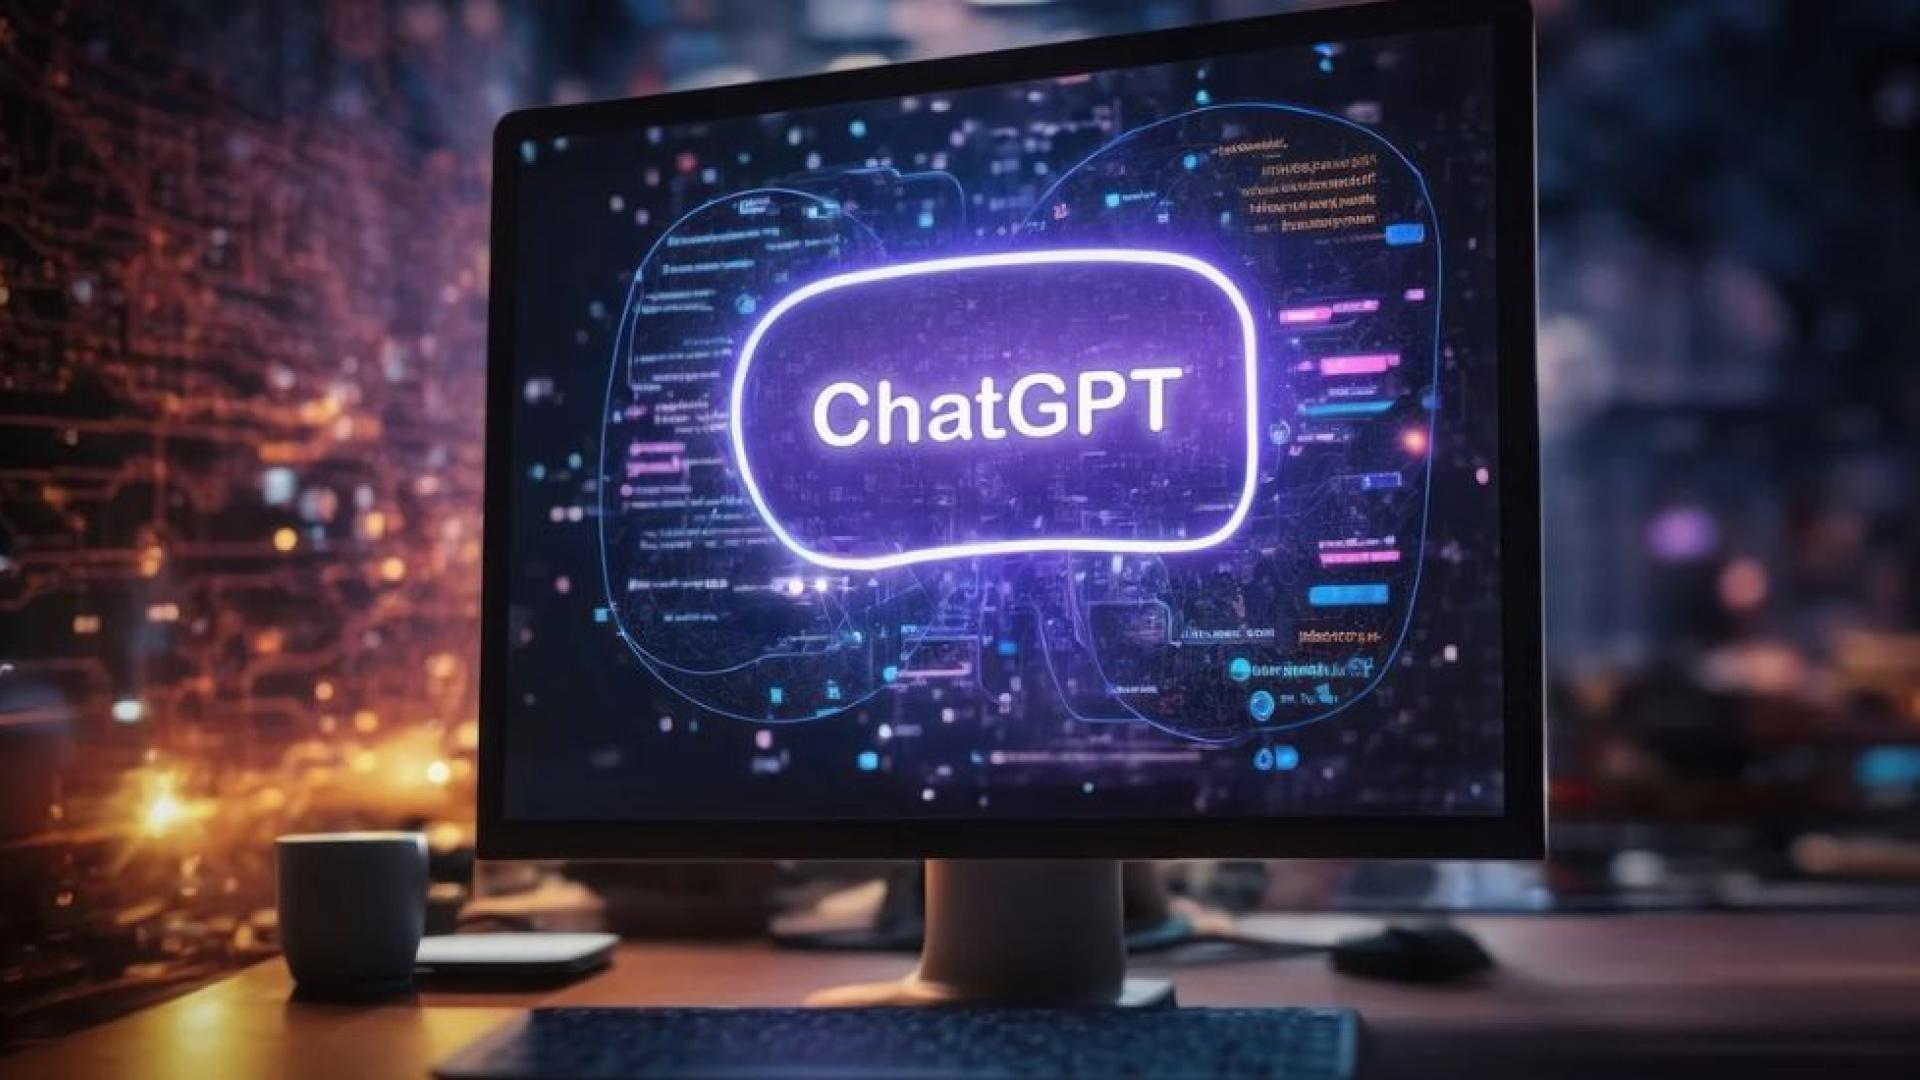 chatgpt vuelve a revolucionar la inteligencia artificial con un lenguaje más natural y sencillo